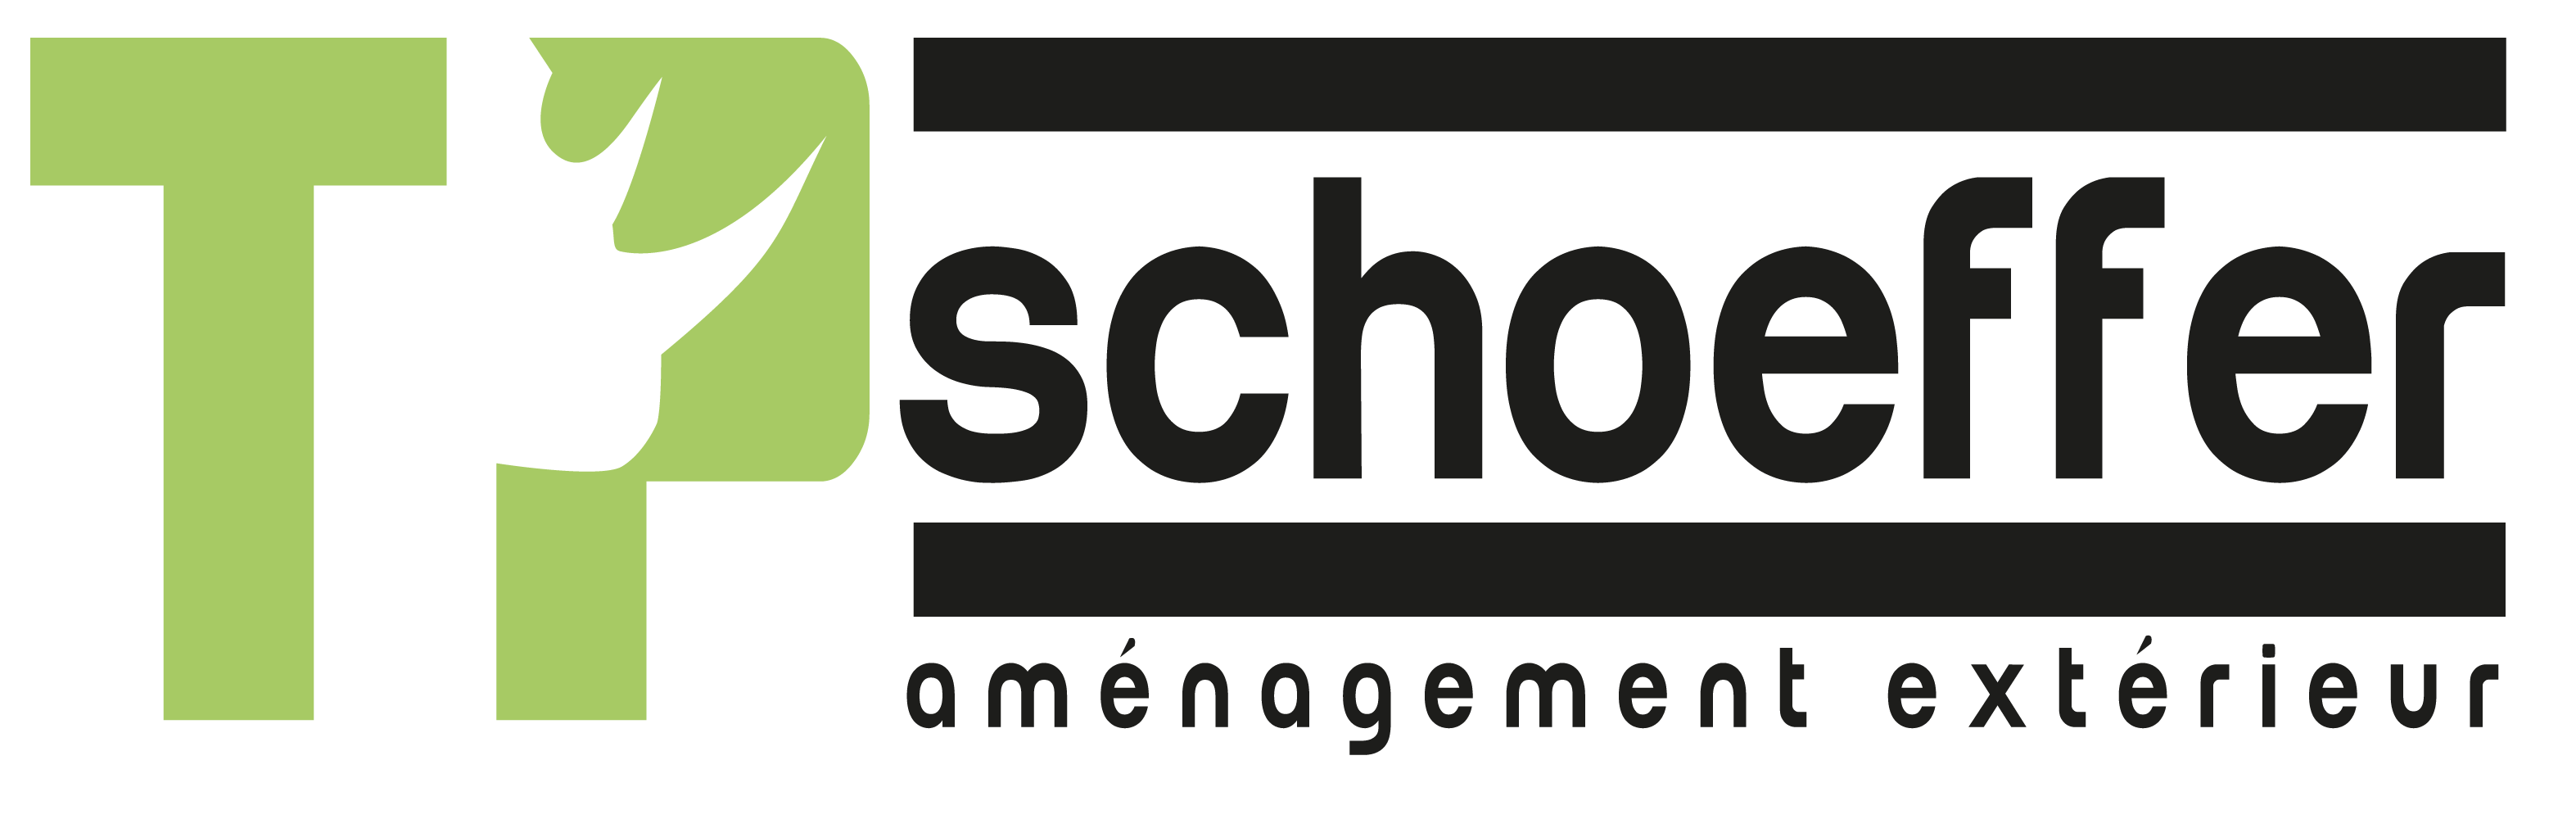 logo-TP SCHOEFFER